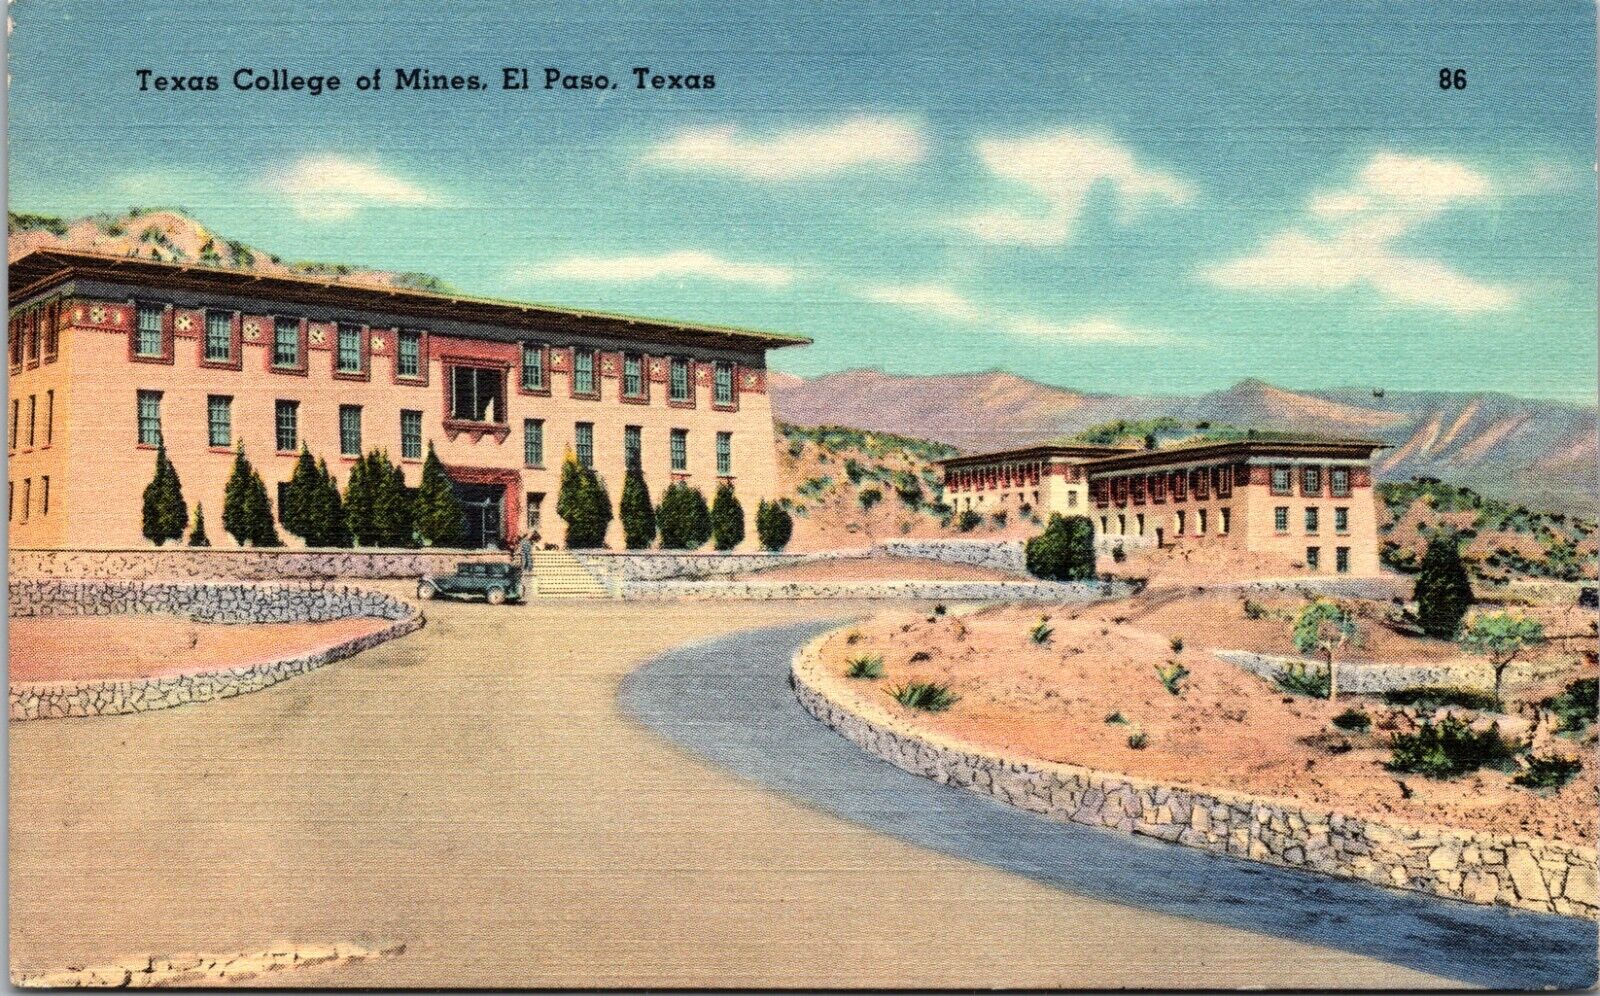 Texas College of Mines, El Paso, Texas - Postcard